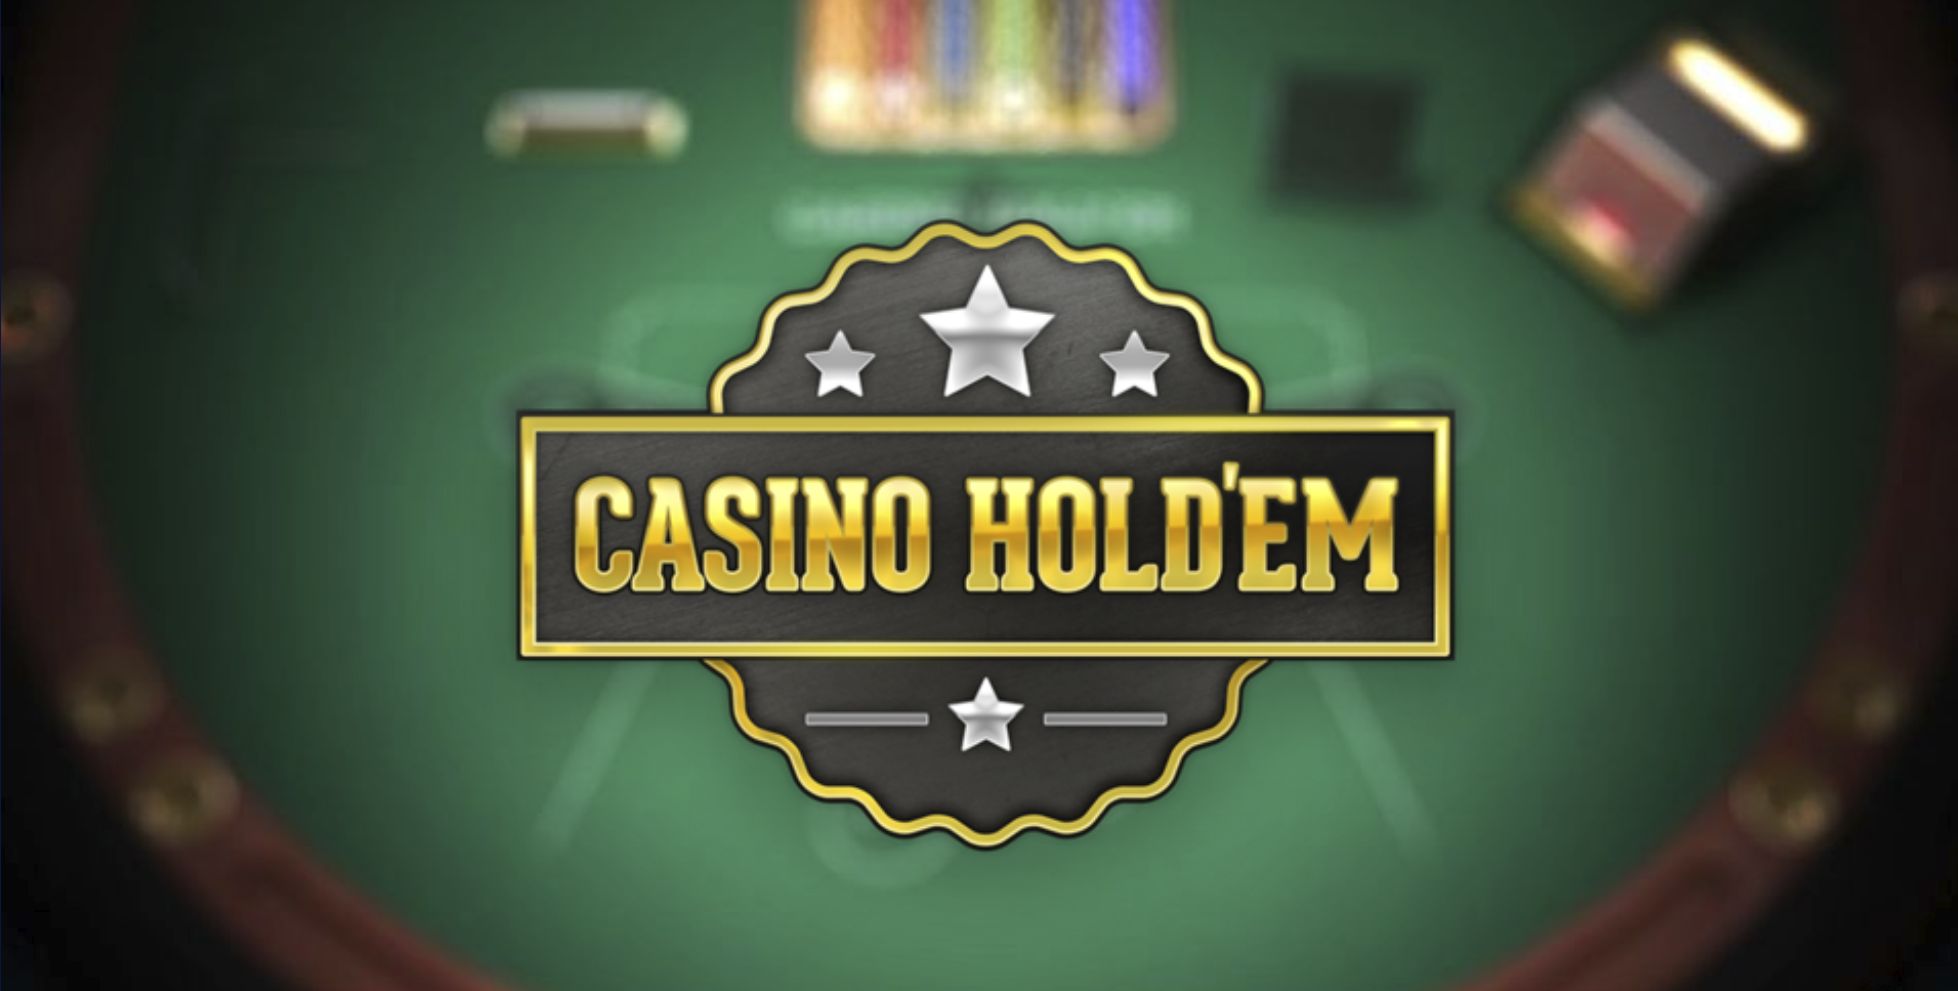 casino texas hold em poker philadelphia